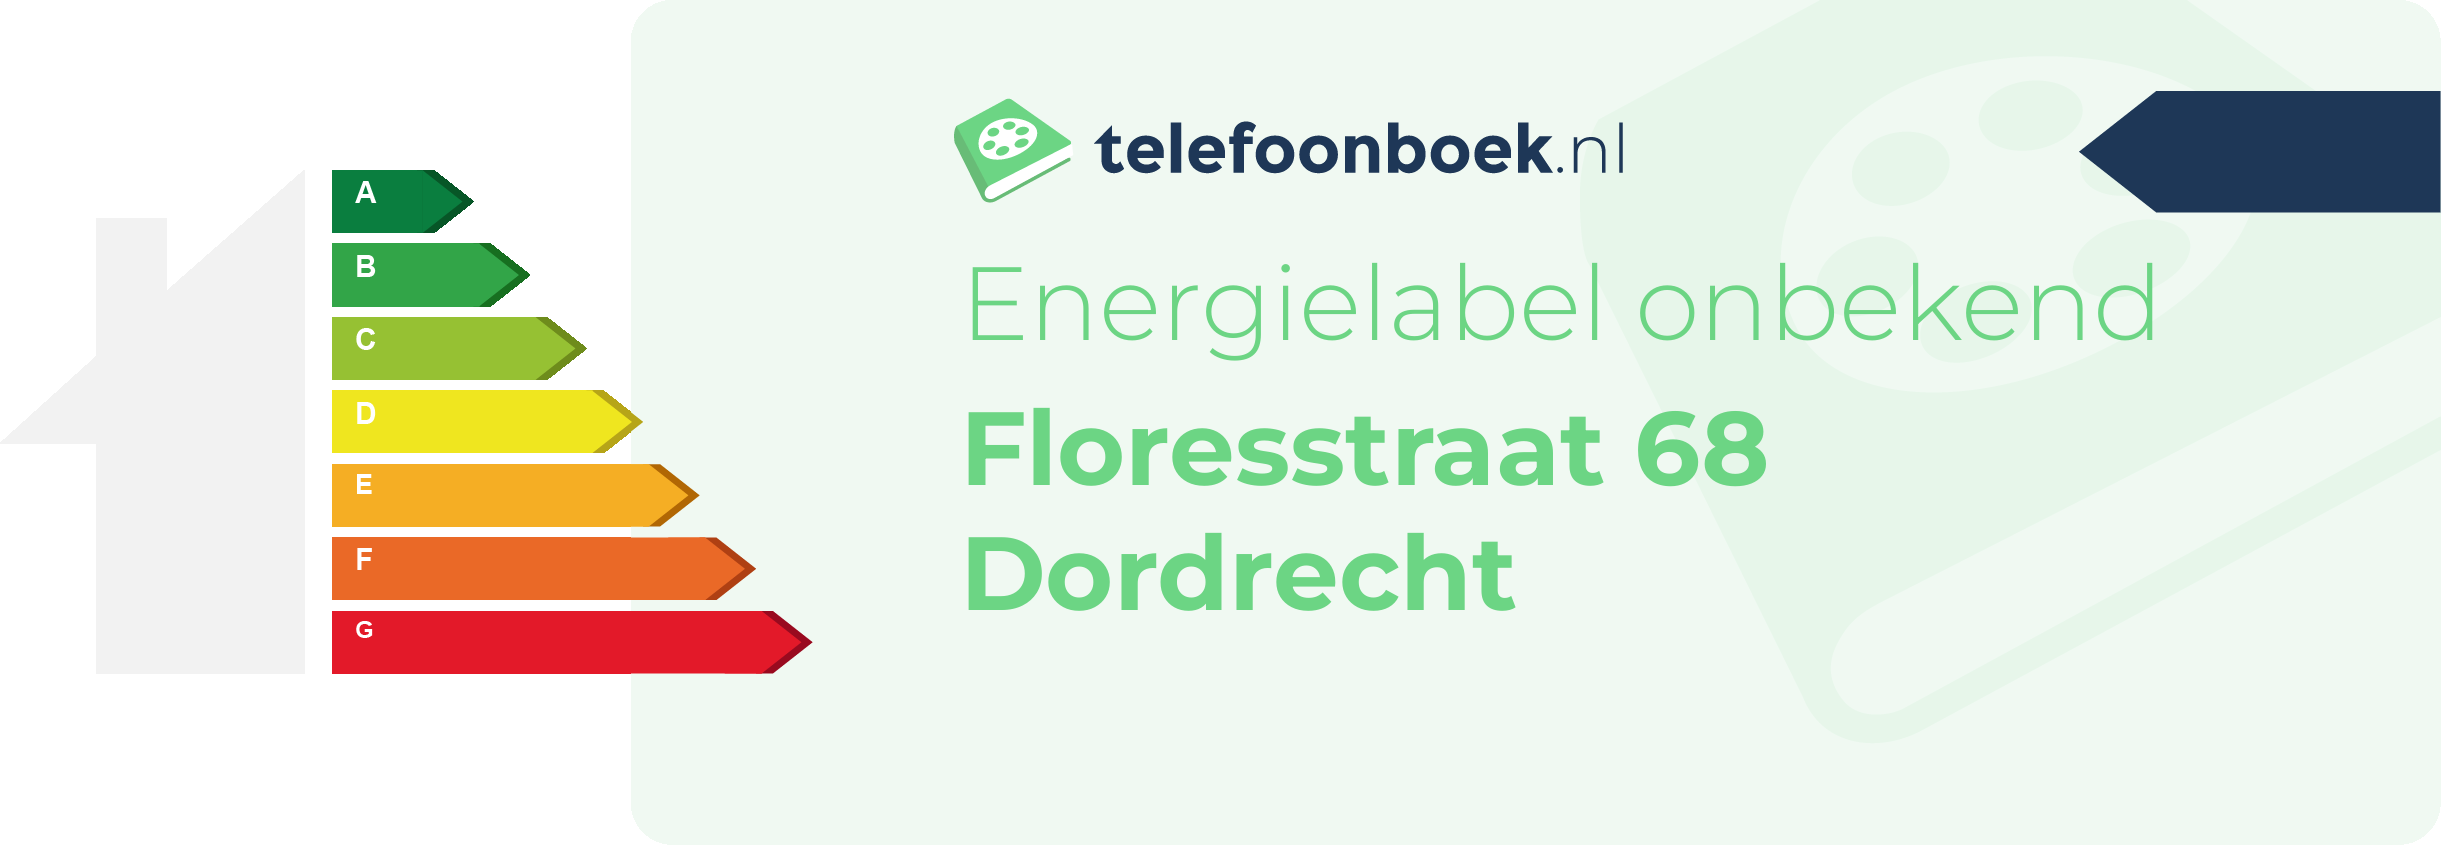 Energielabel Floresstraat 68 Dordrecht